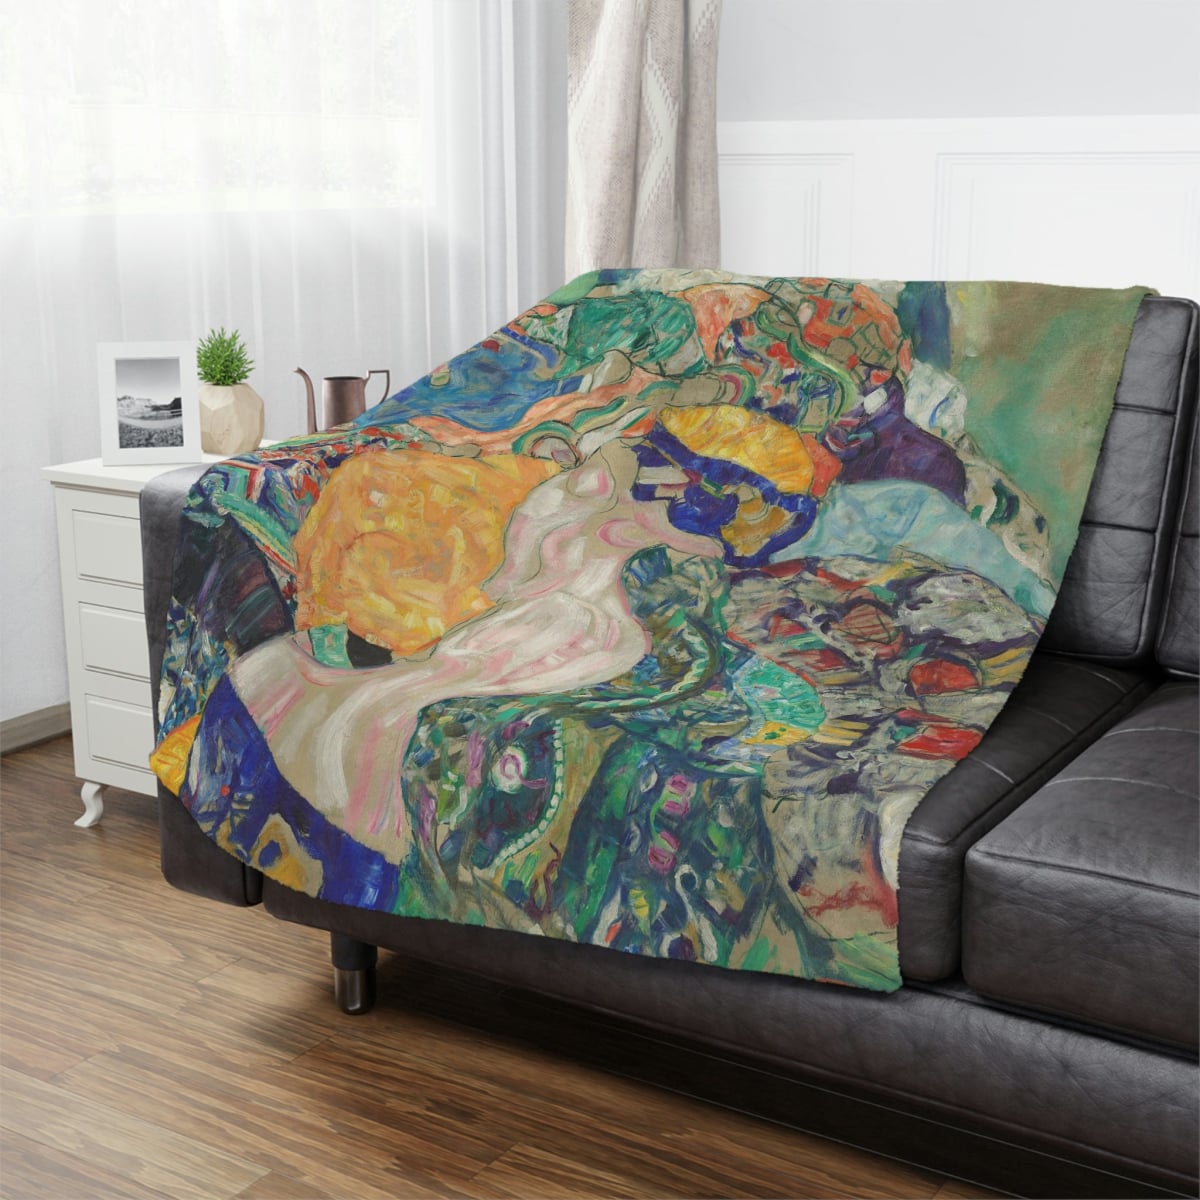 Iconic Gustav Klimt artwork blanket